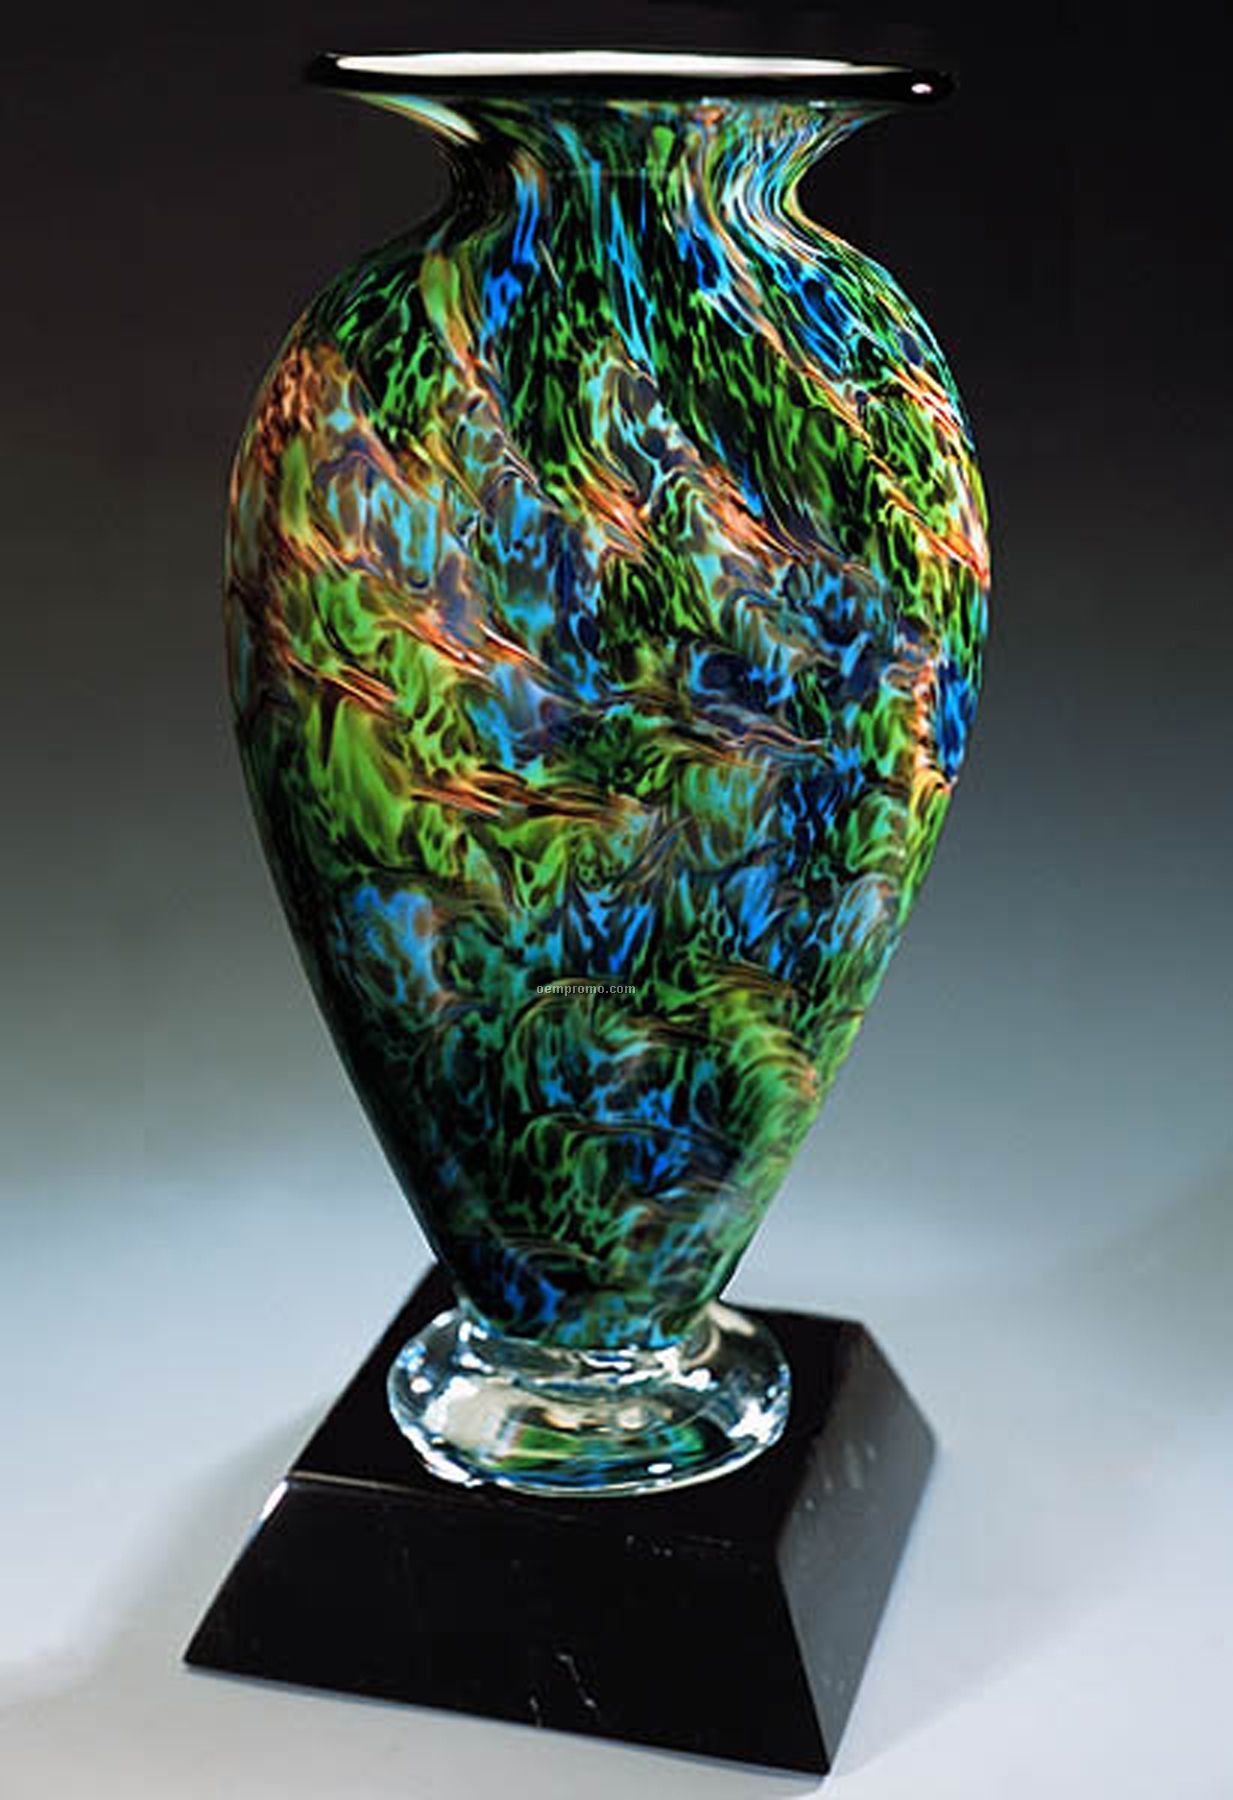 Jade Glen Mercury Sculpture Award W/ Marble Base (4.25"X9")